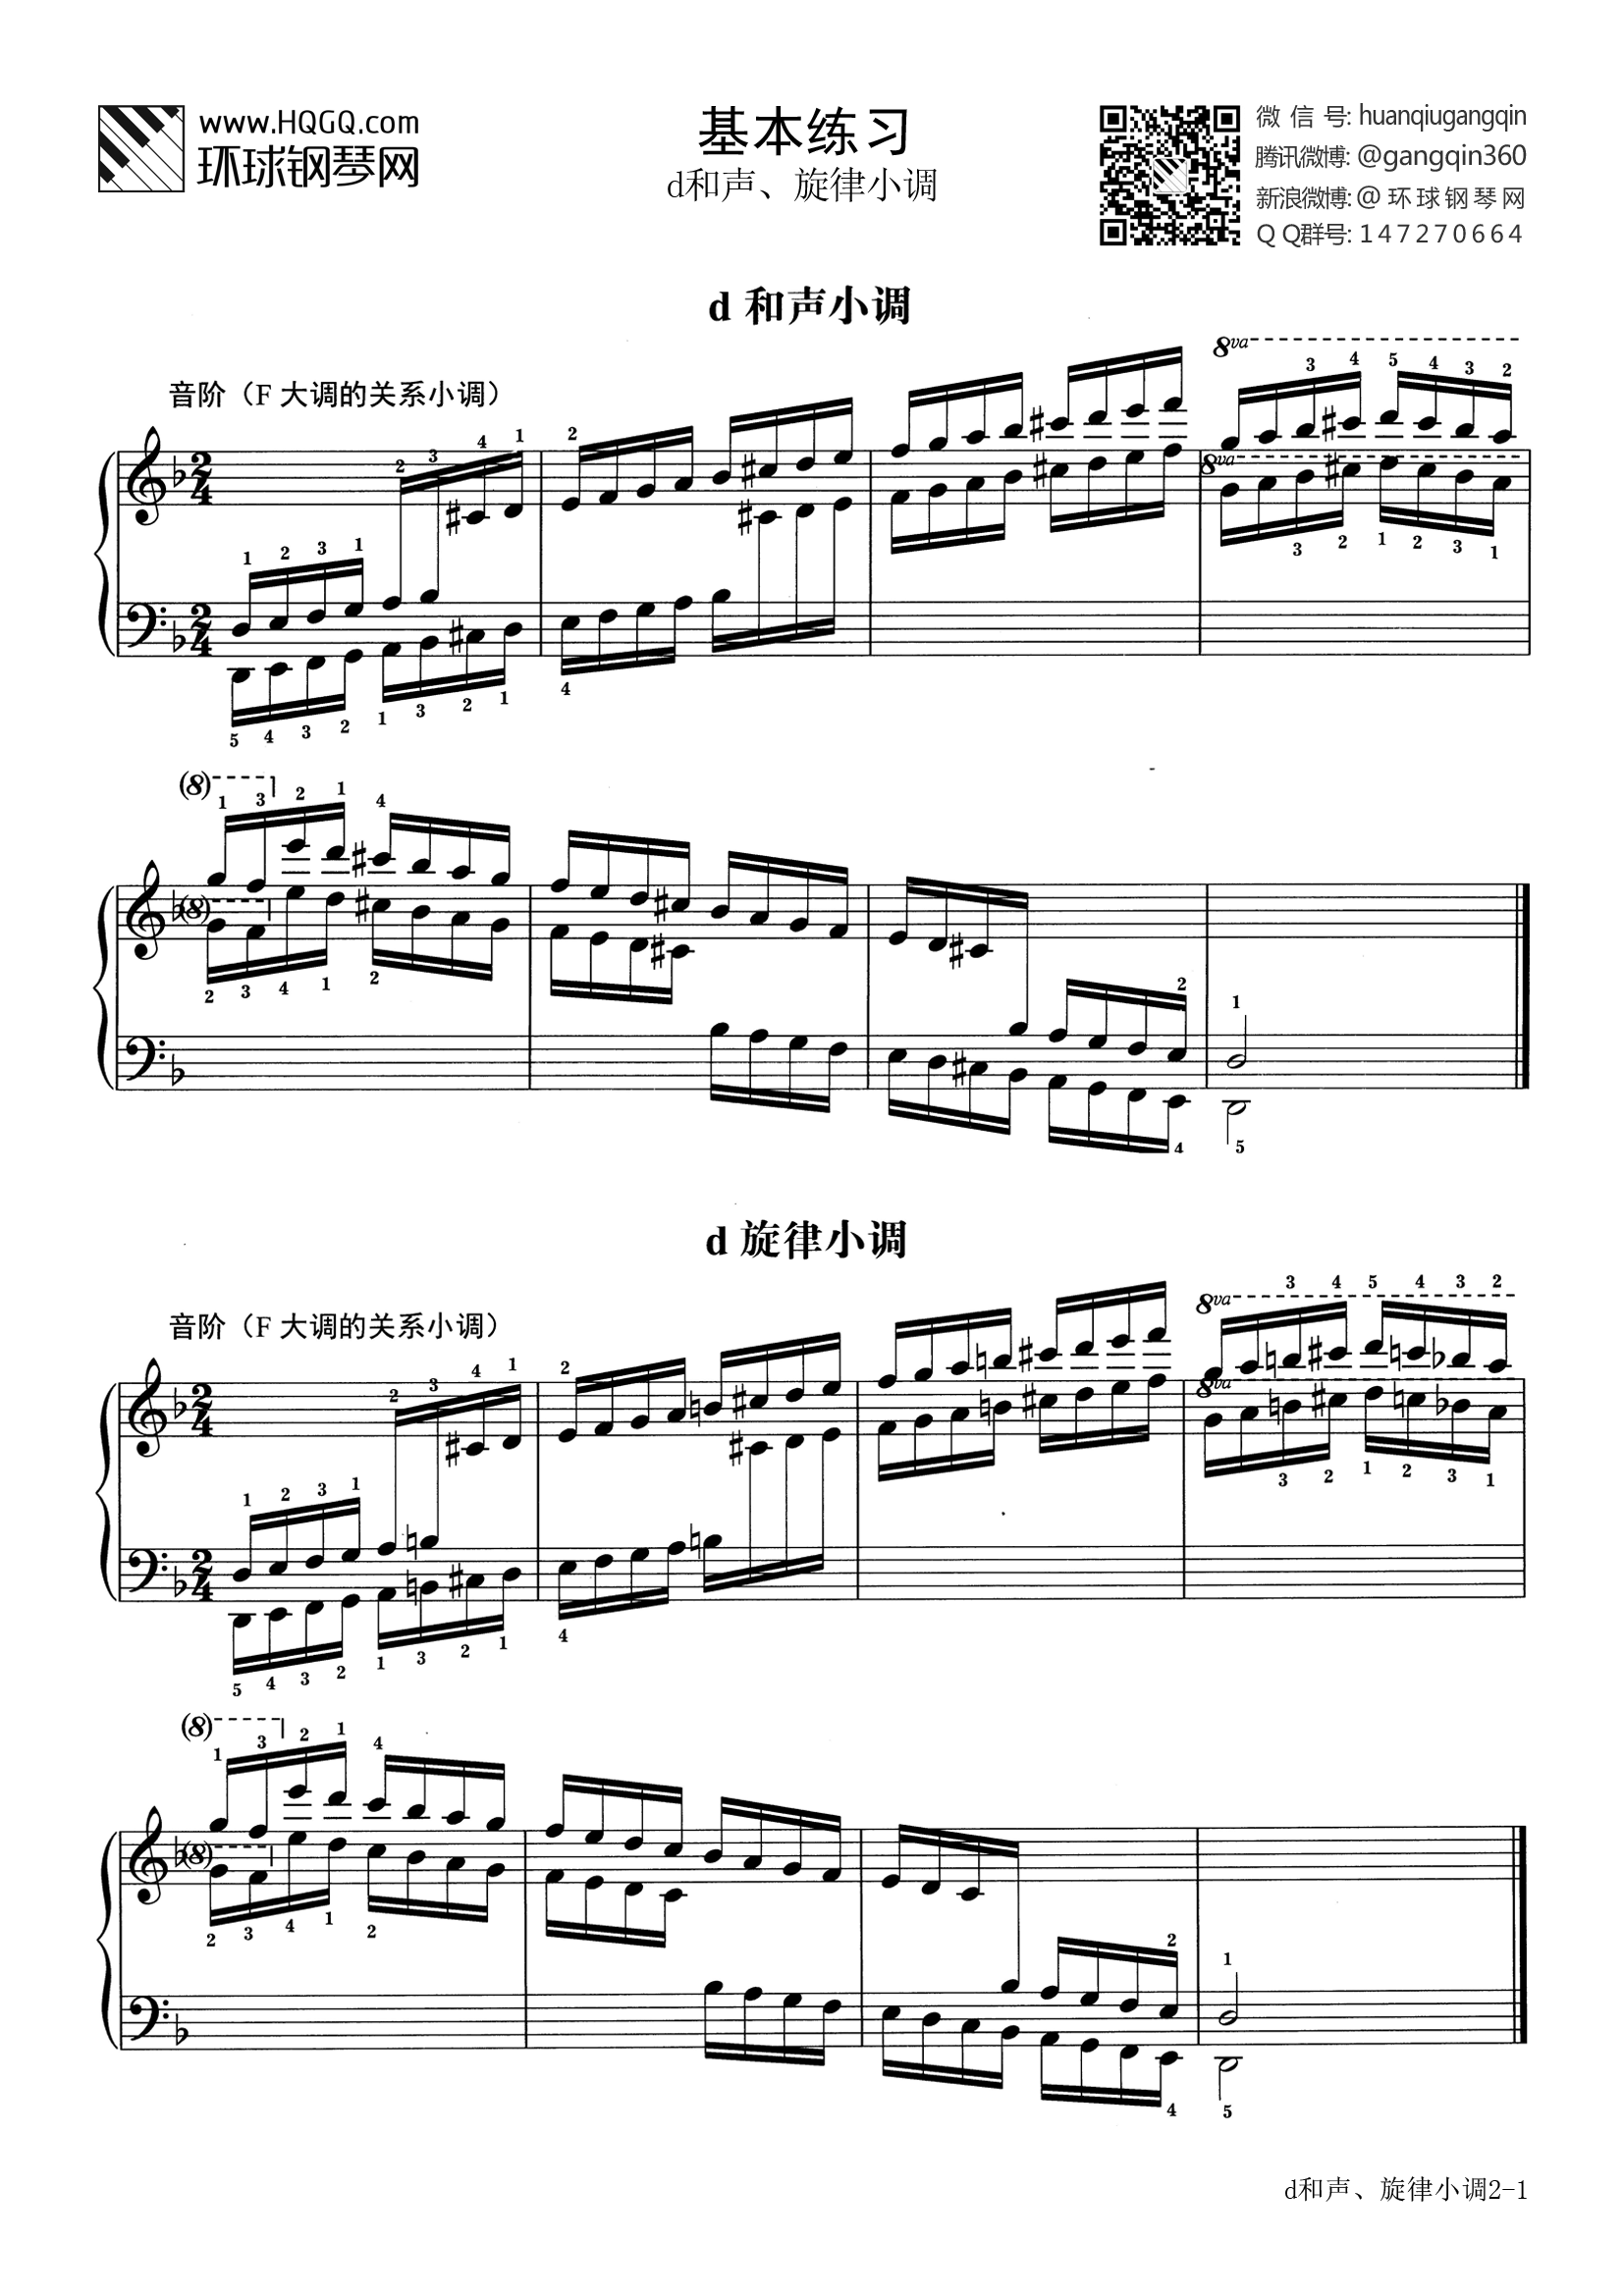 基本练习 第十二套 d和声,旋律小调(选自武汉音乐学院钢琴考级教程